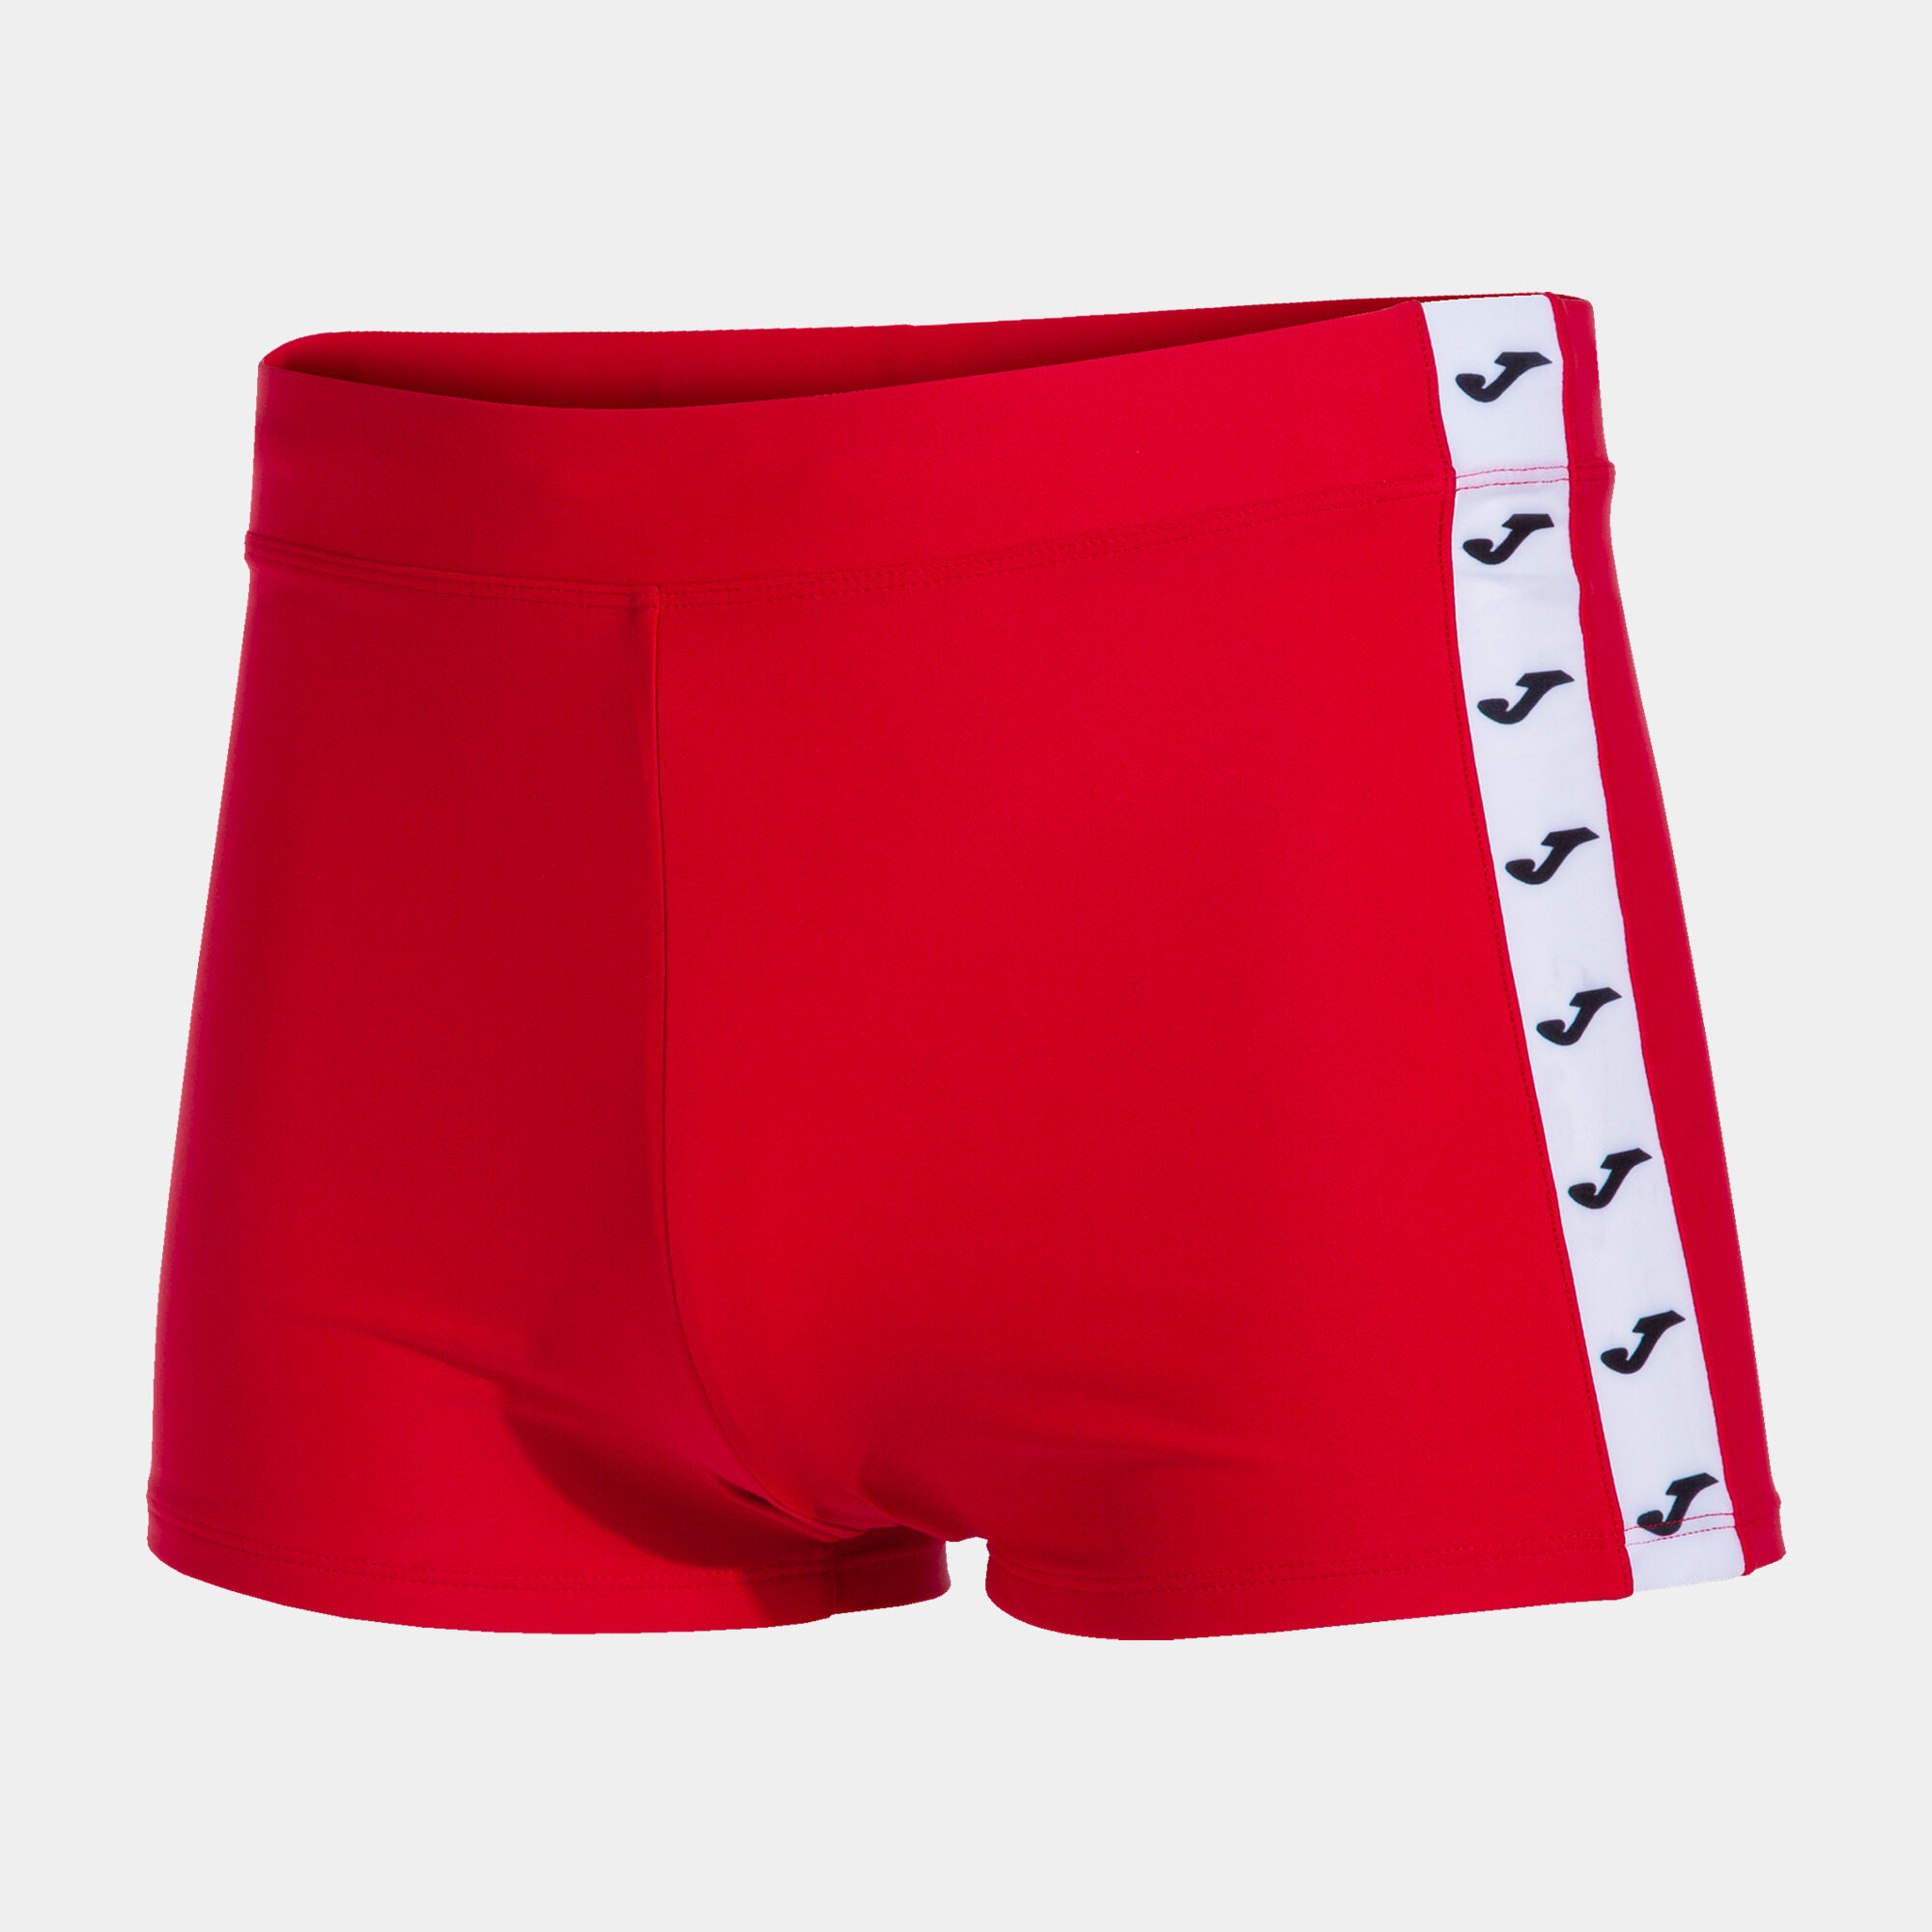 Swimming shorts man Splash red